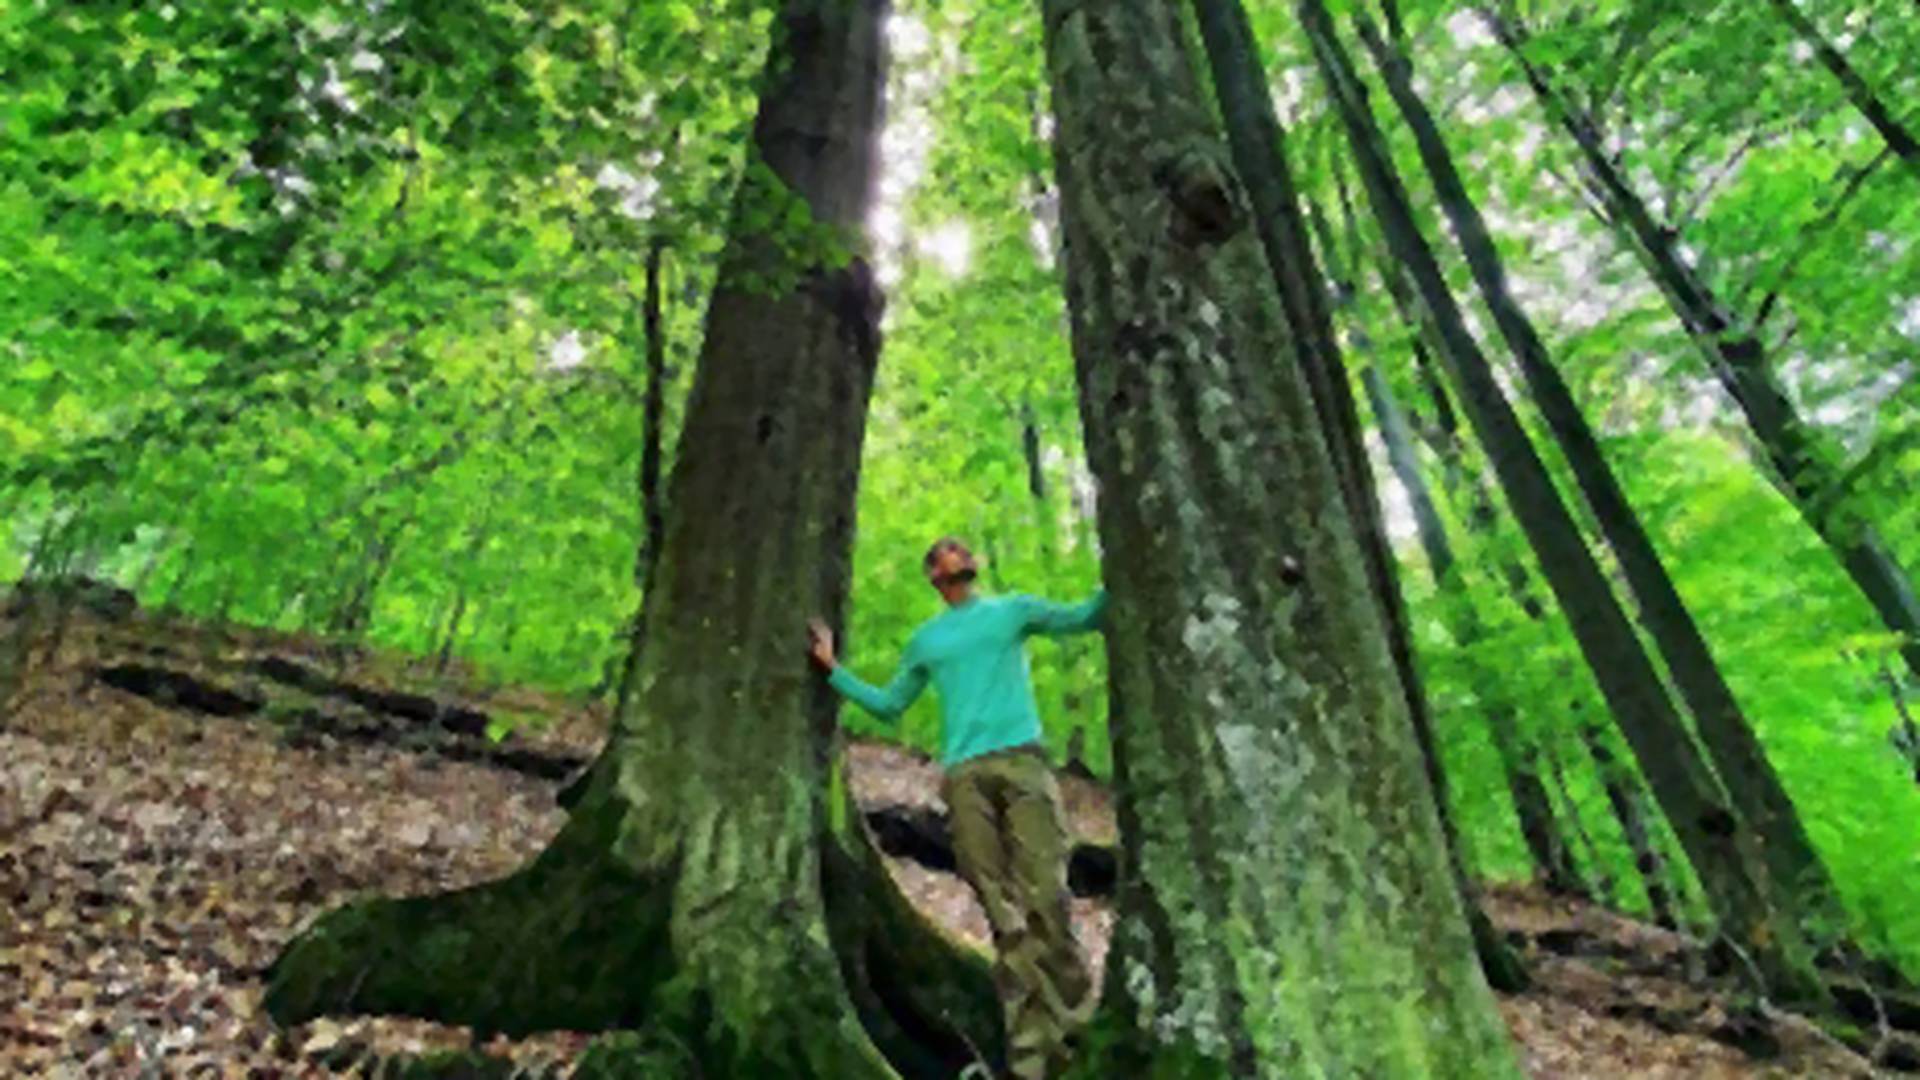 Srbija ima čak 11 prašuma, a najznačajnija se nalazi u Istočnoj Srbiji: Vinatovača